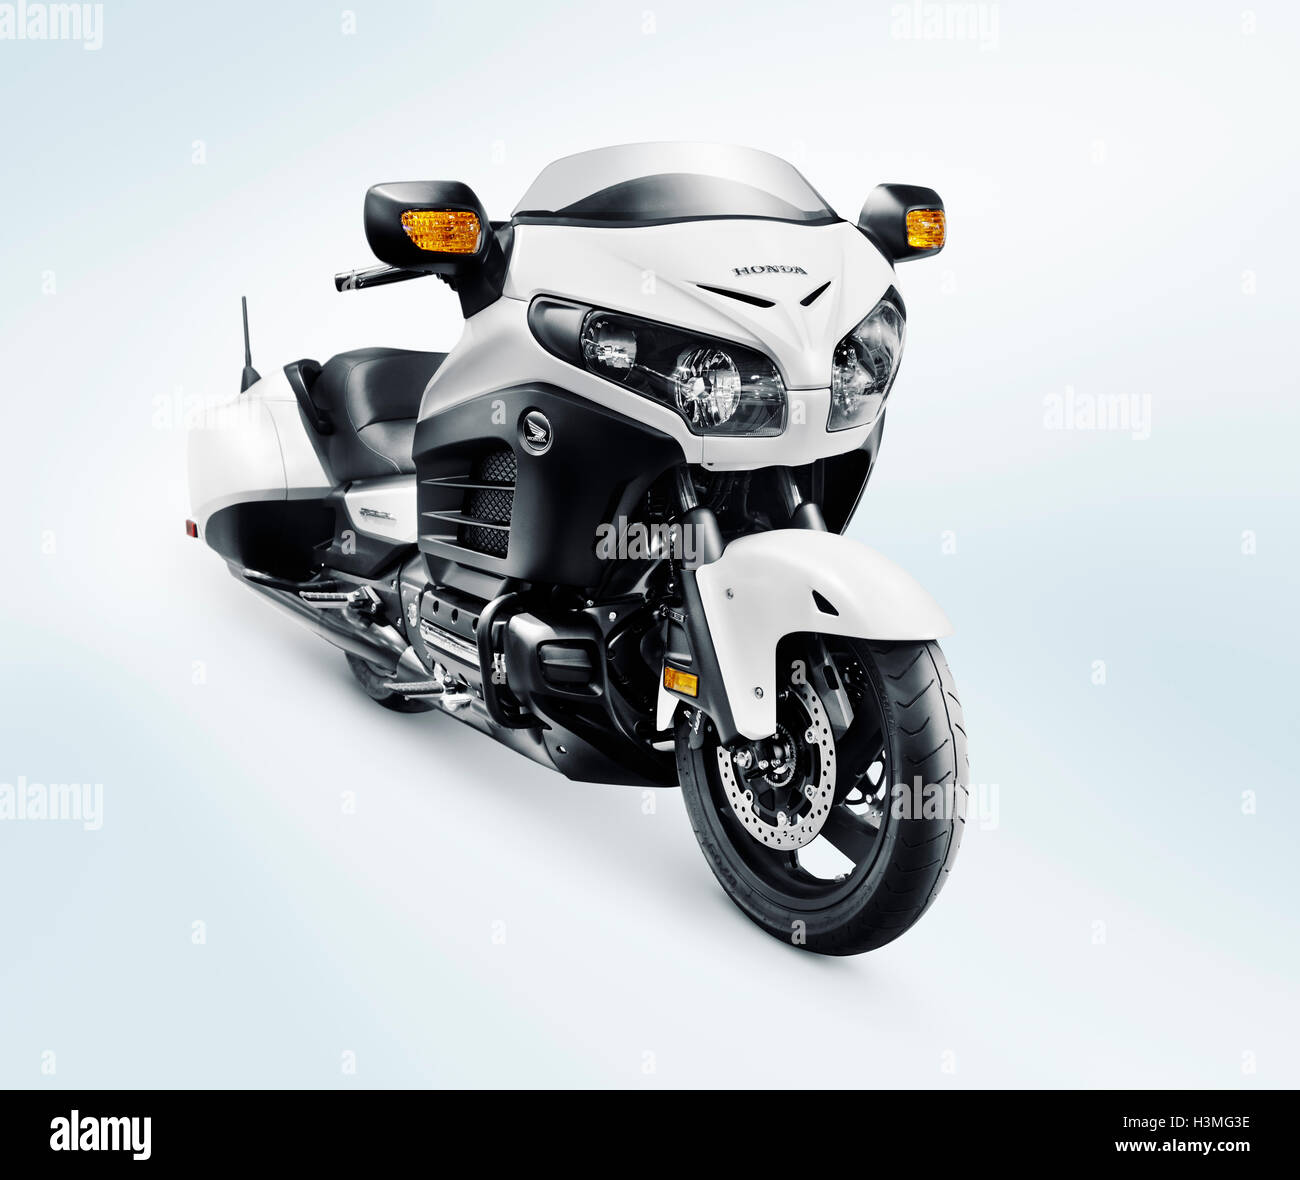 2016 Honda GoldWing F6B cruiser motorcycle motorbike isolated on light blue background Stock Photo